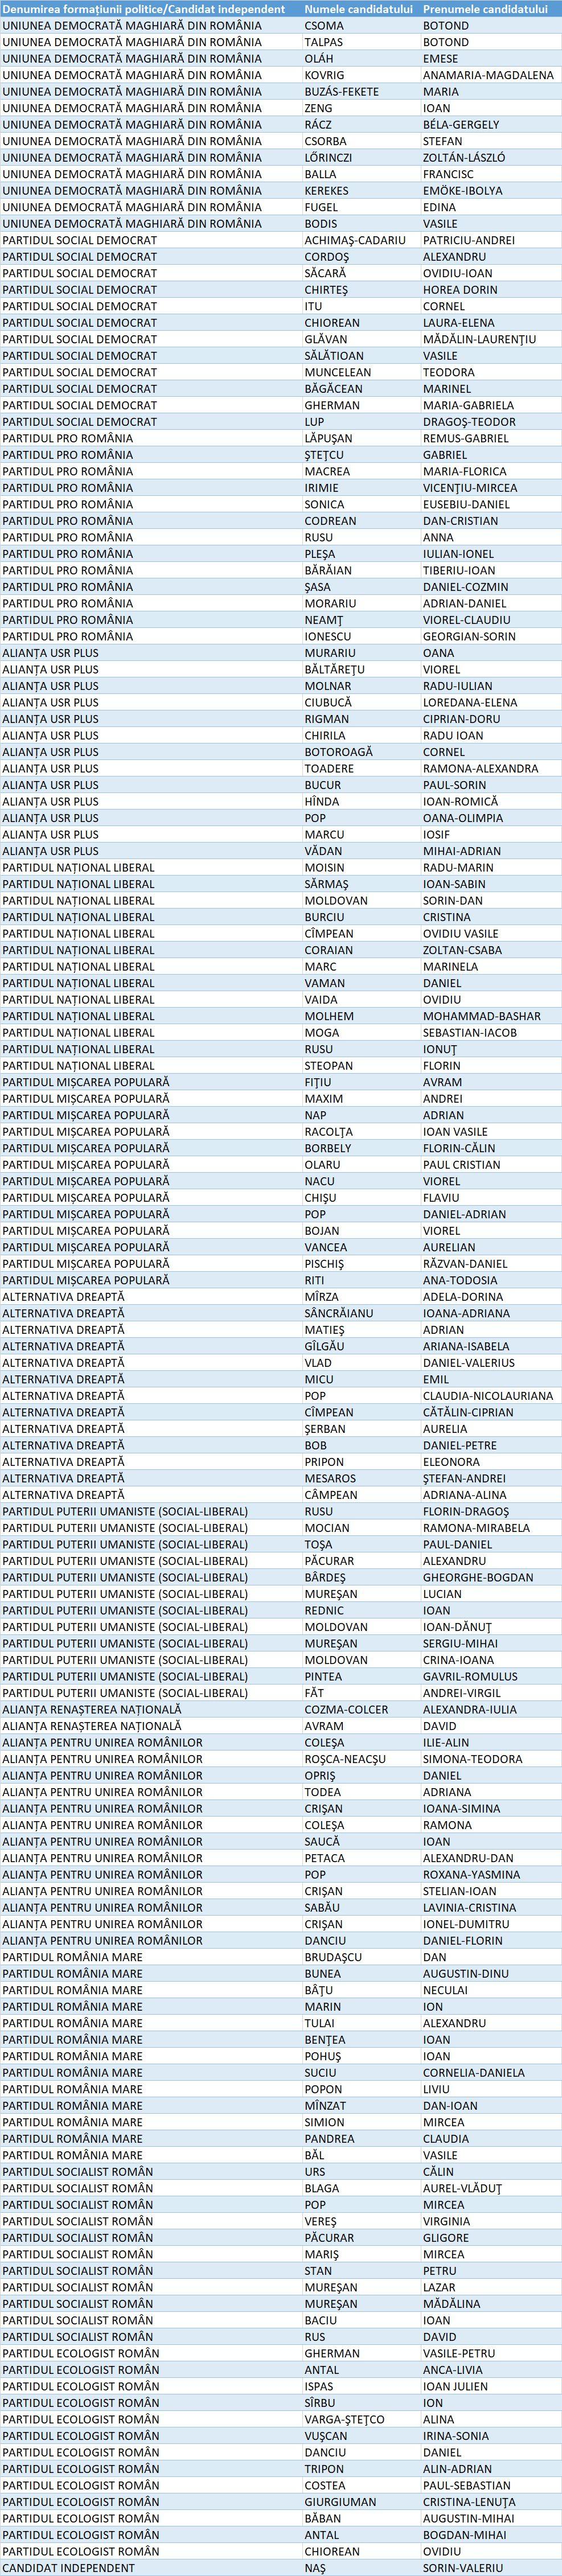 Lista Camera Deputaților Cluj